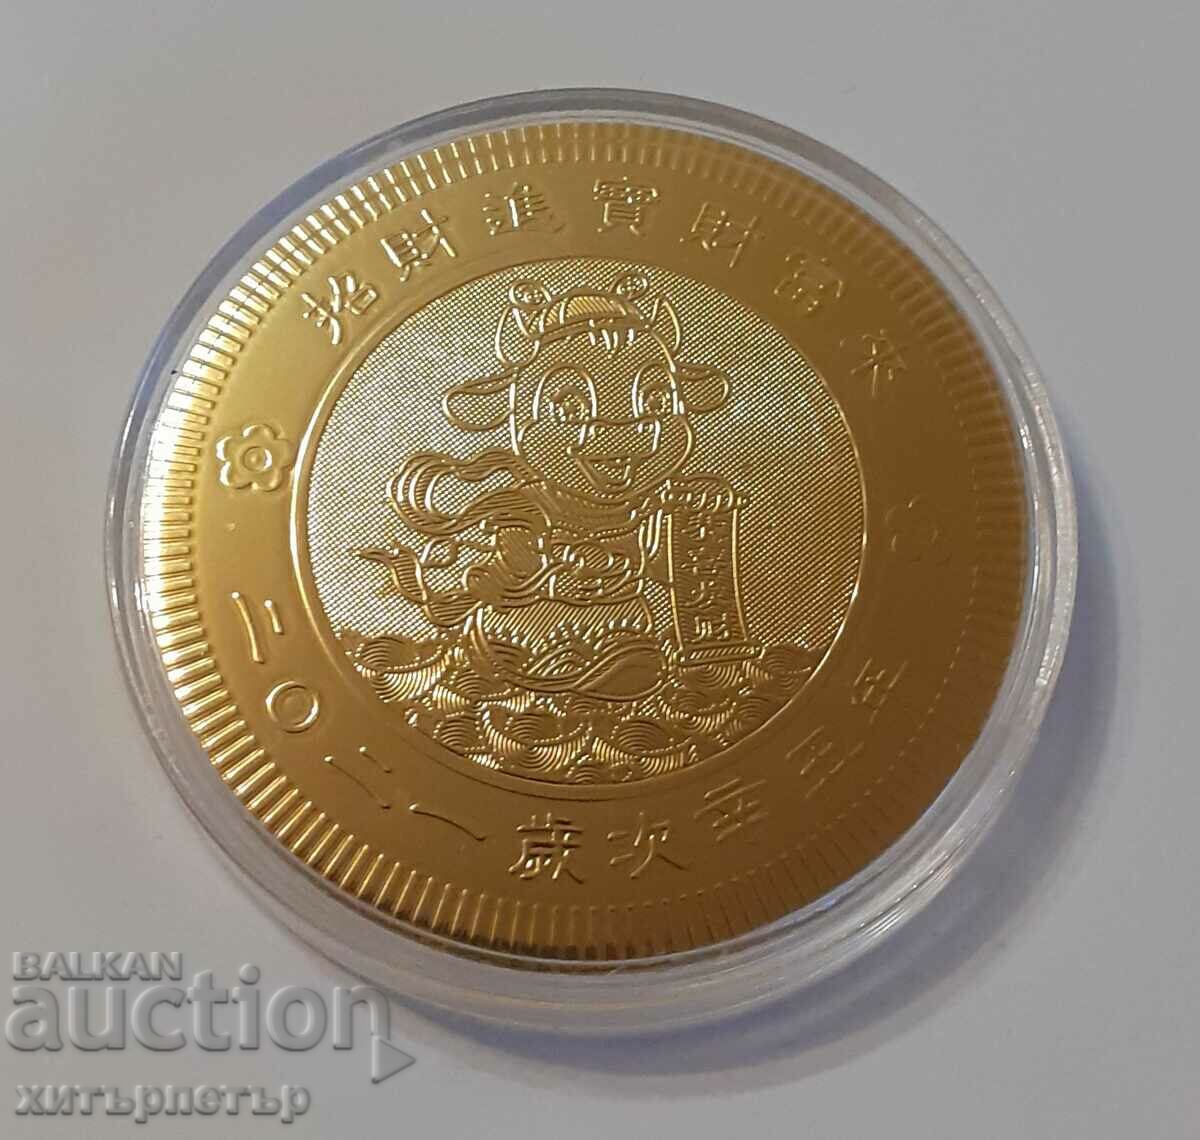 Taurus Zodiac 2021 souvenir coin